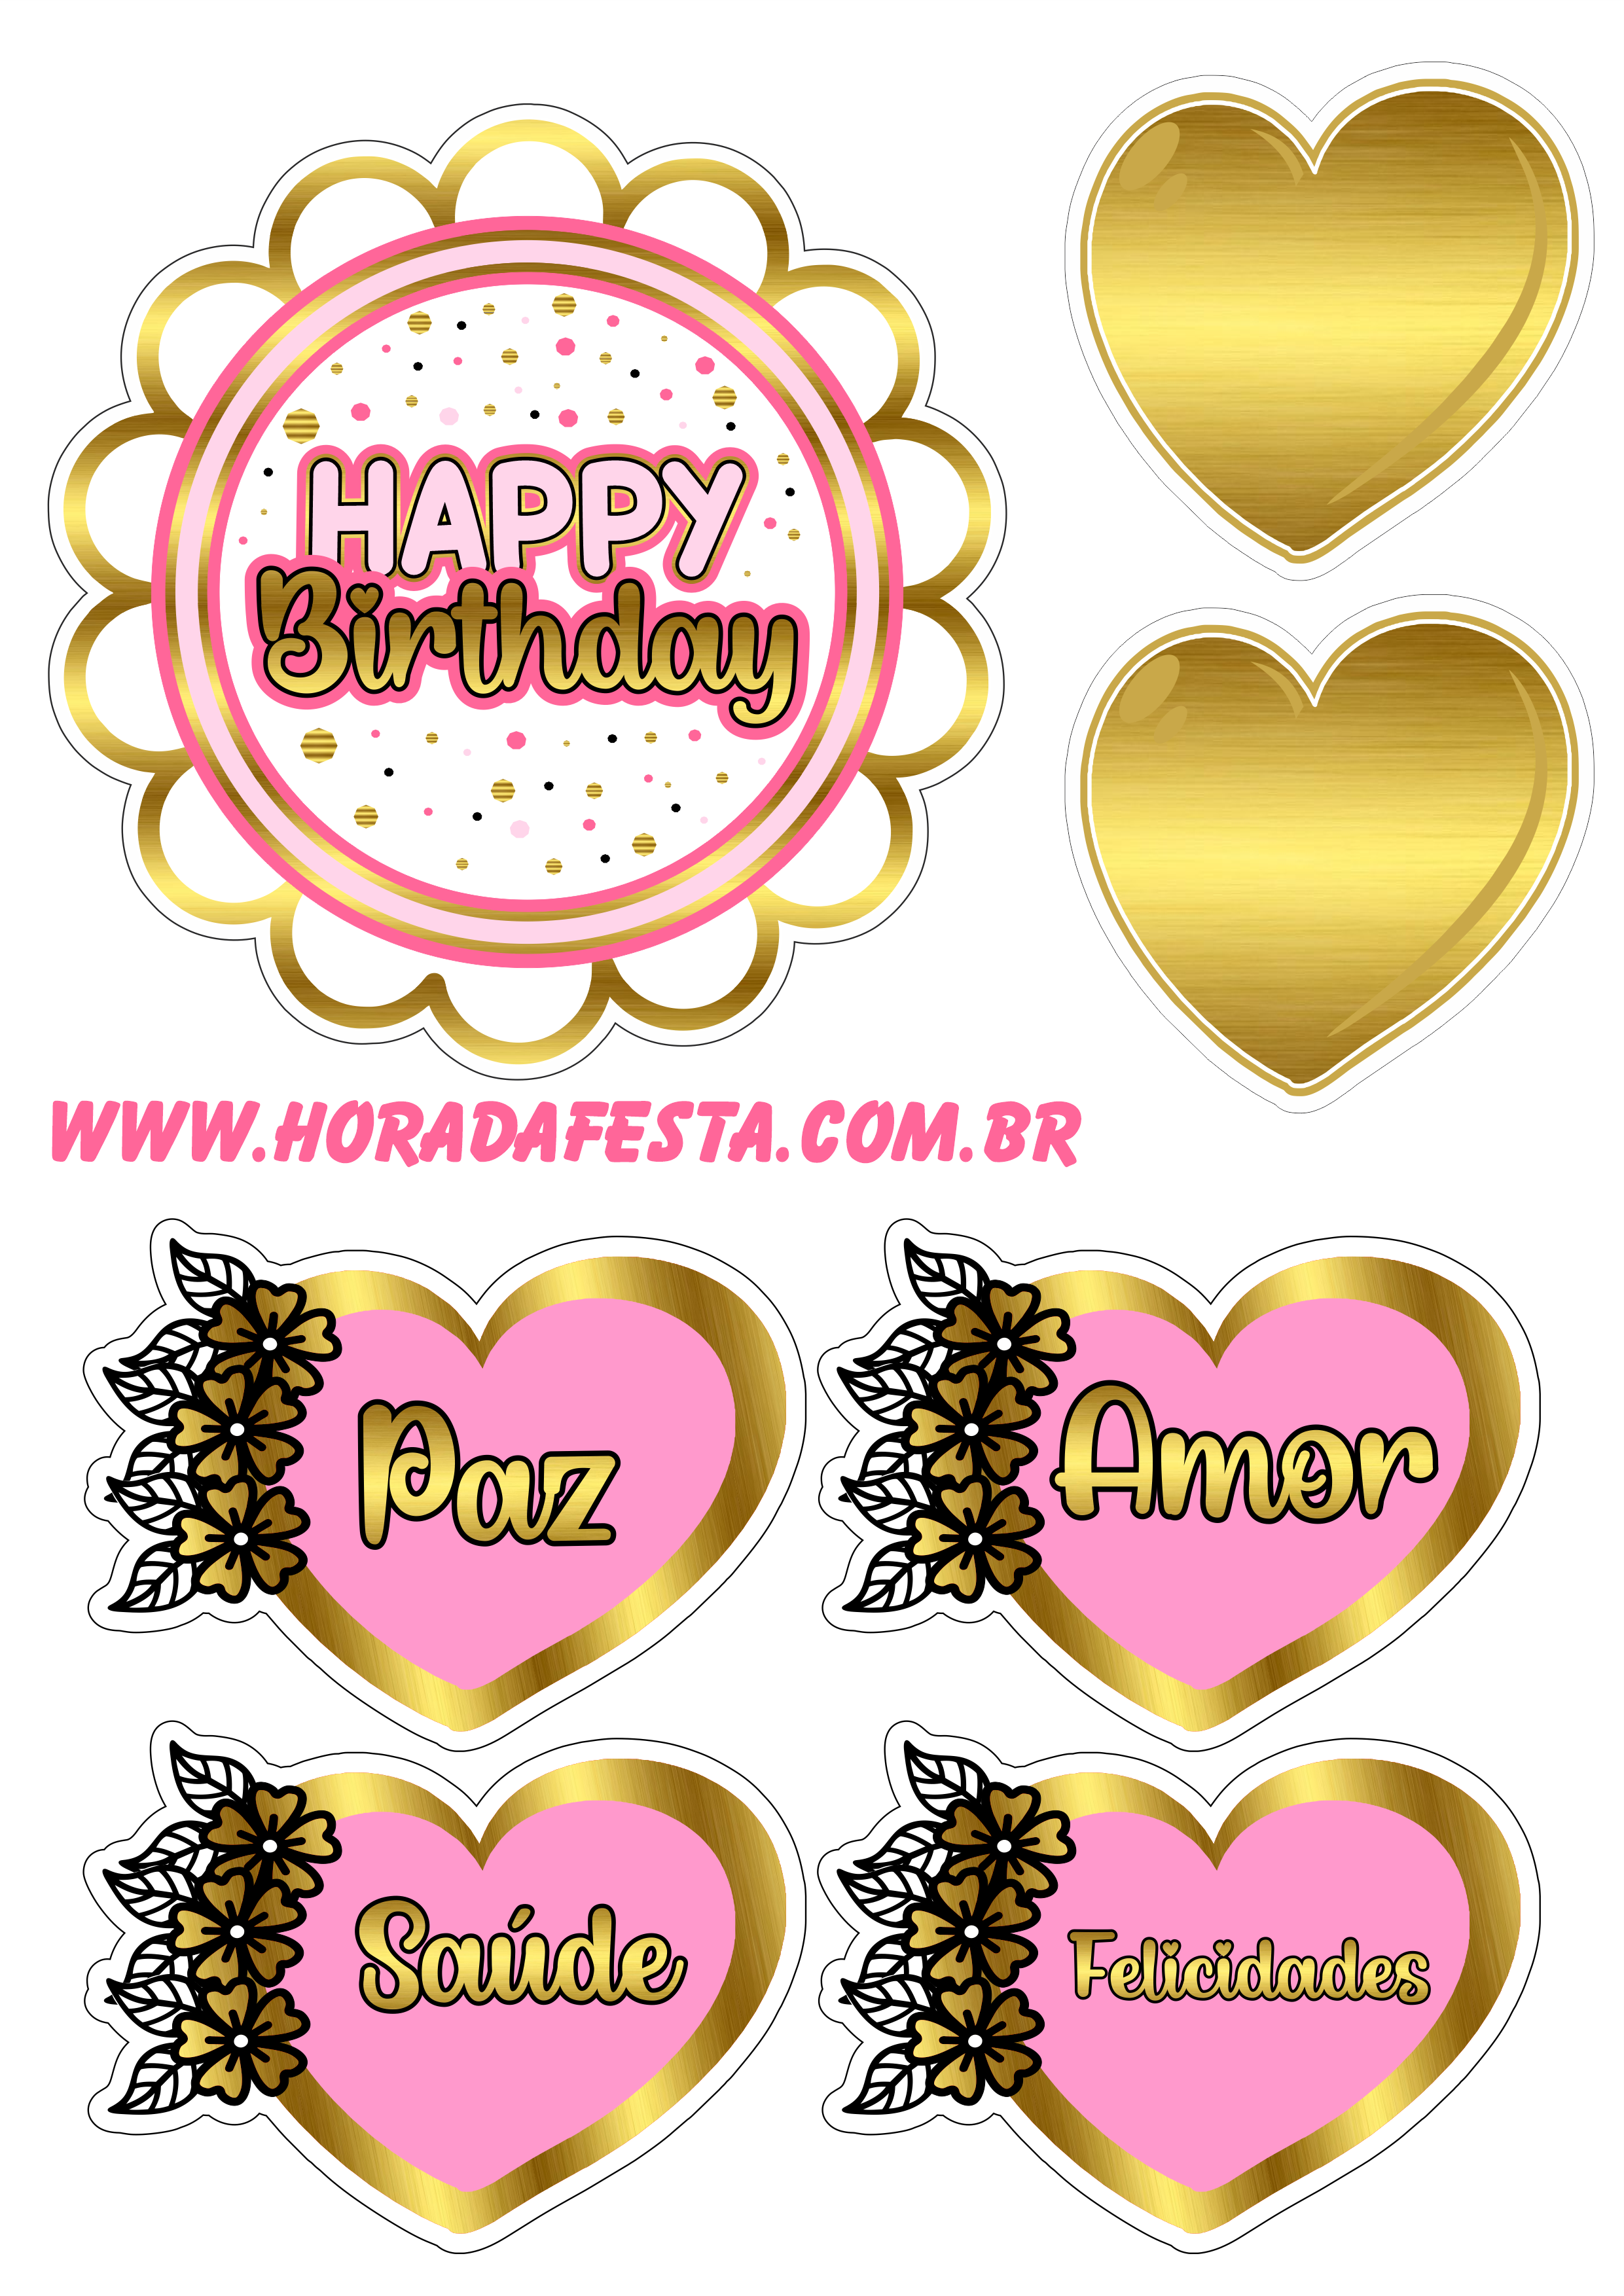 Happy birthday topo de bolo de aniversário dourado com rosa corações com frases renda extra com festas e personalizados png